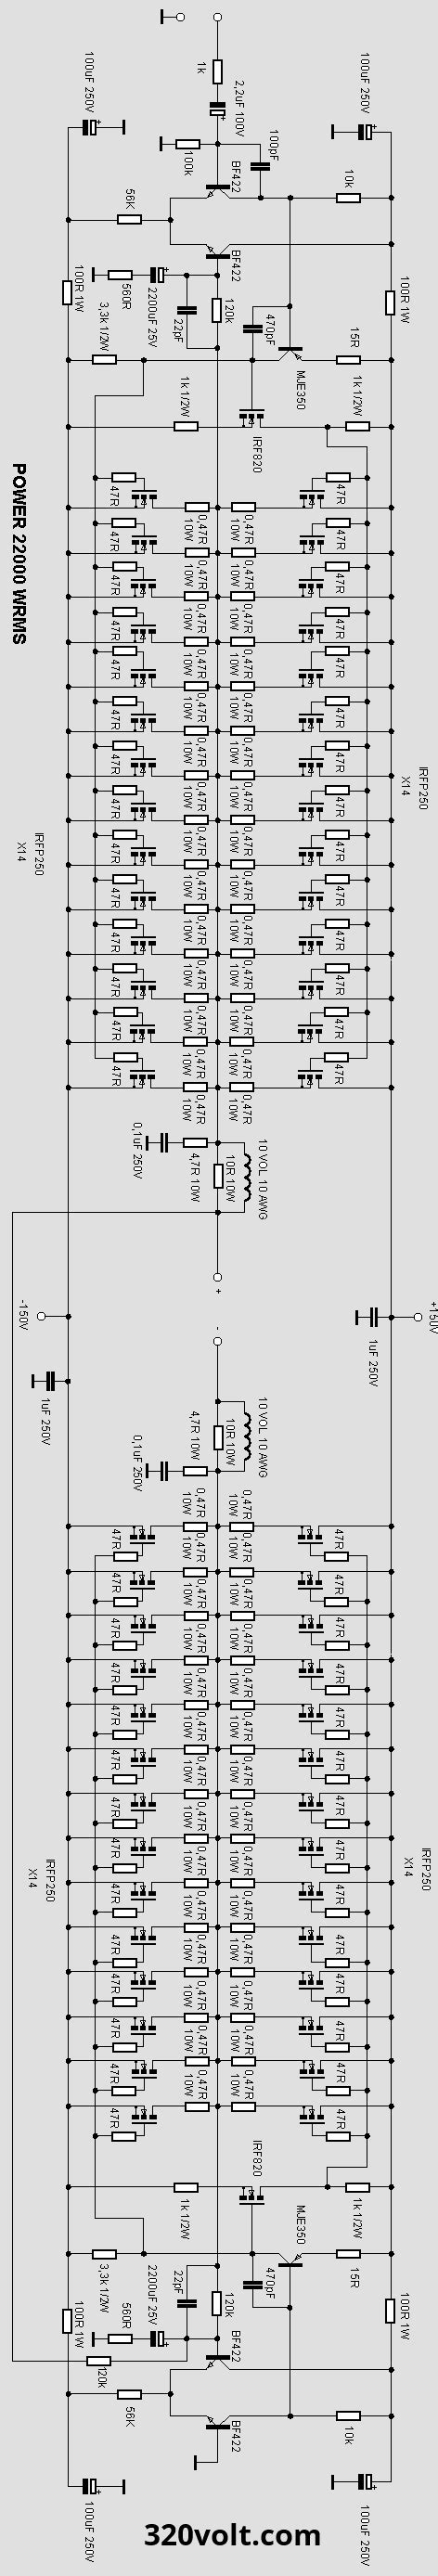 audio amplifier circuit diagram pcb